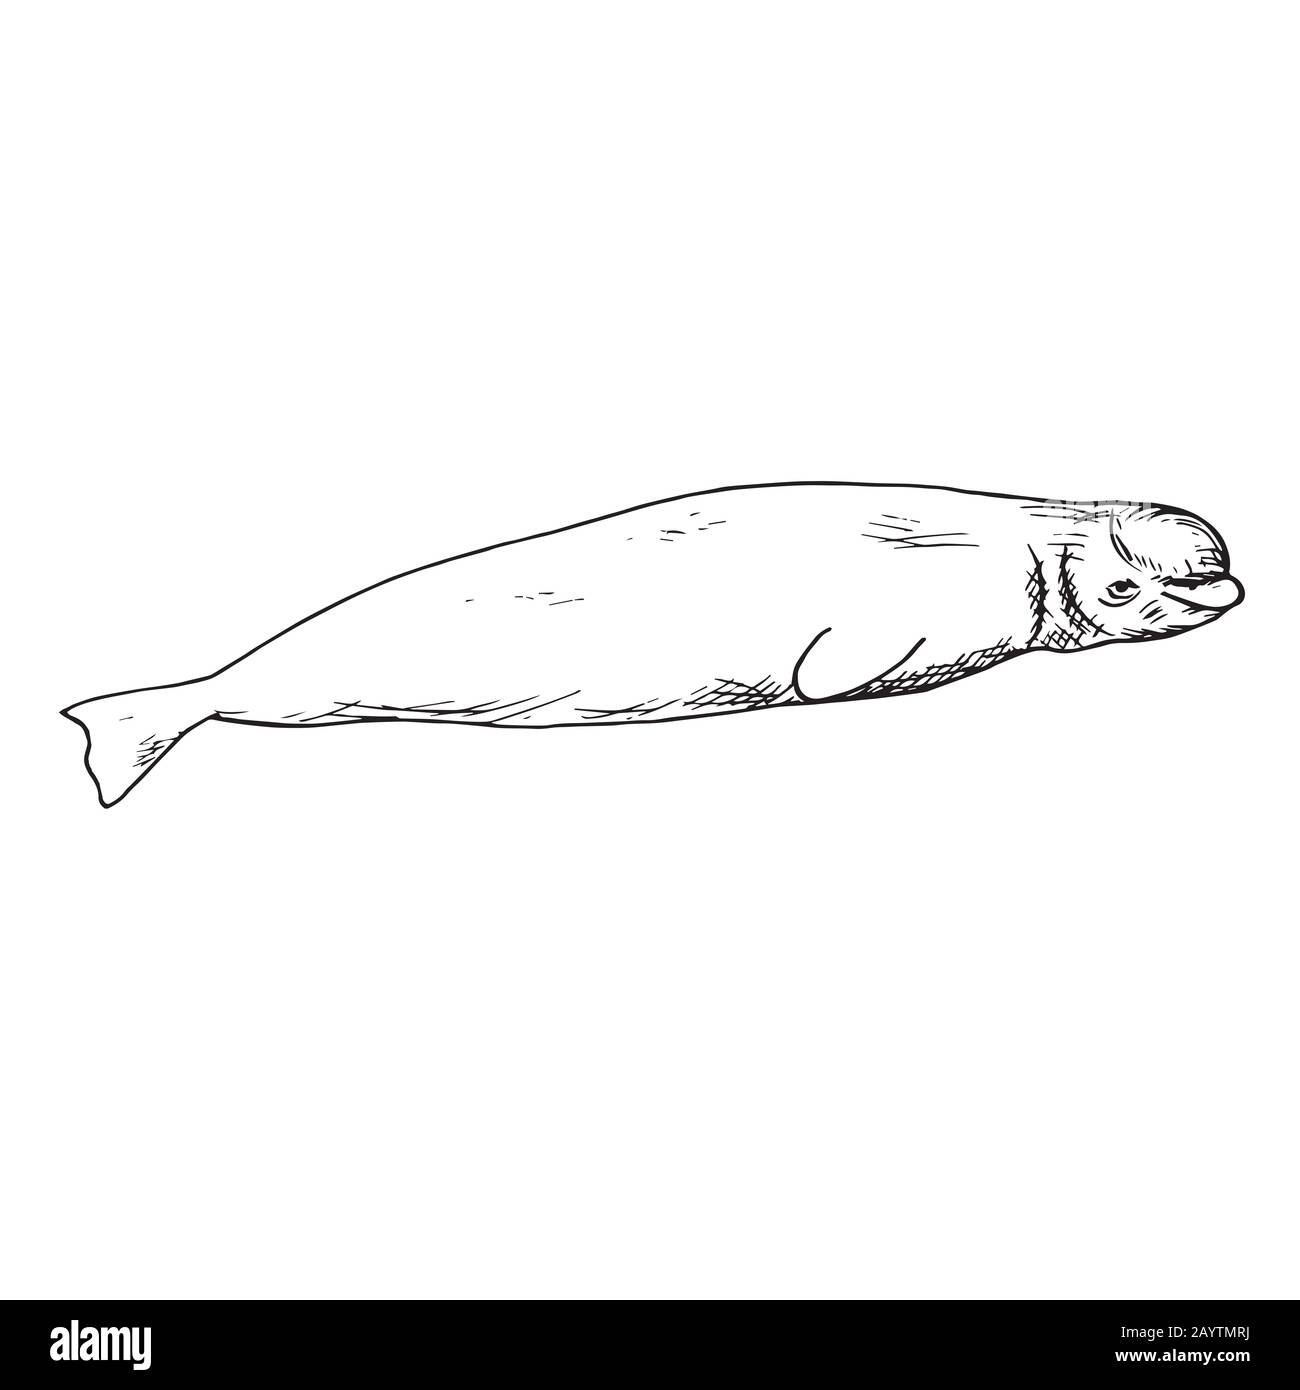 Beluga, hand drawn doodle, sketch, outline illustration Stock Photo